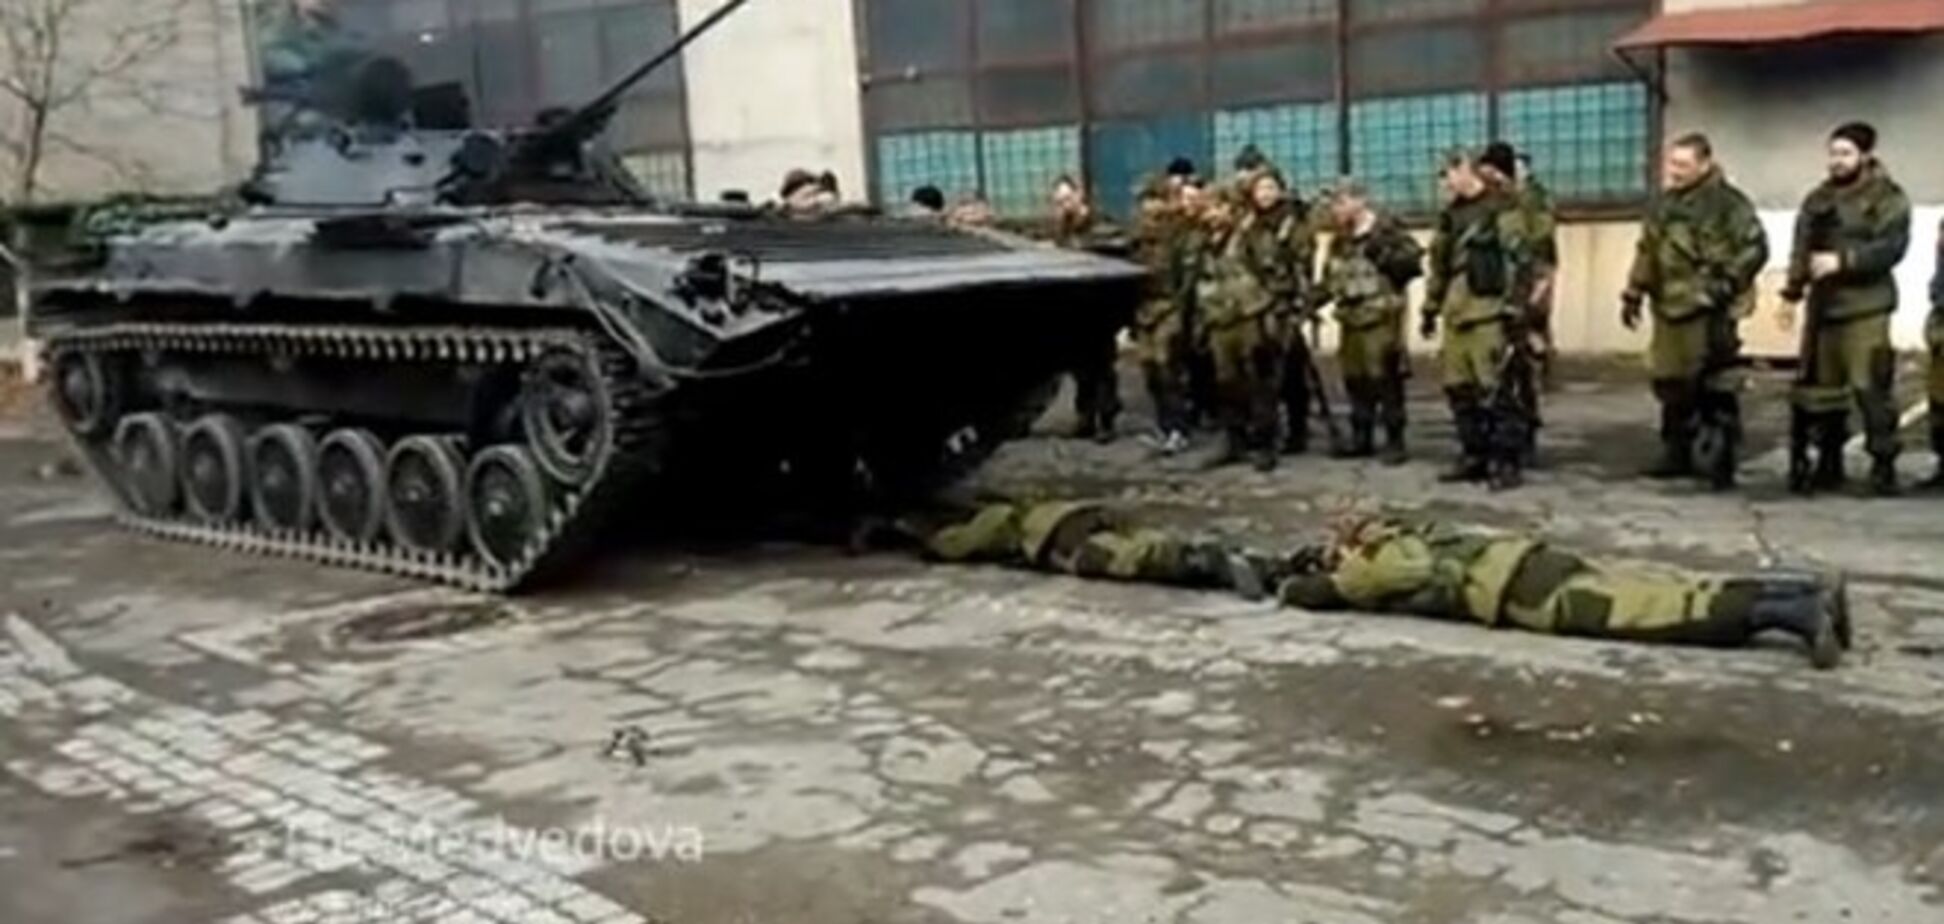 Появилось видео, как по живым боевикам в Донецке проезжает БМД